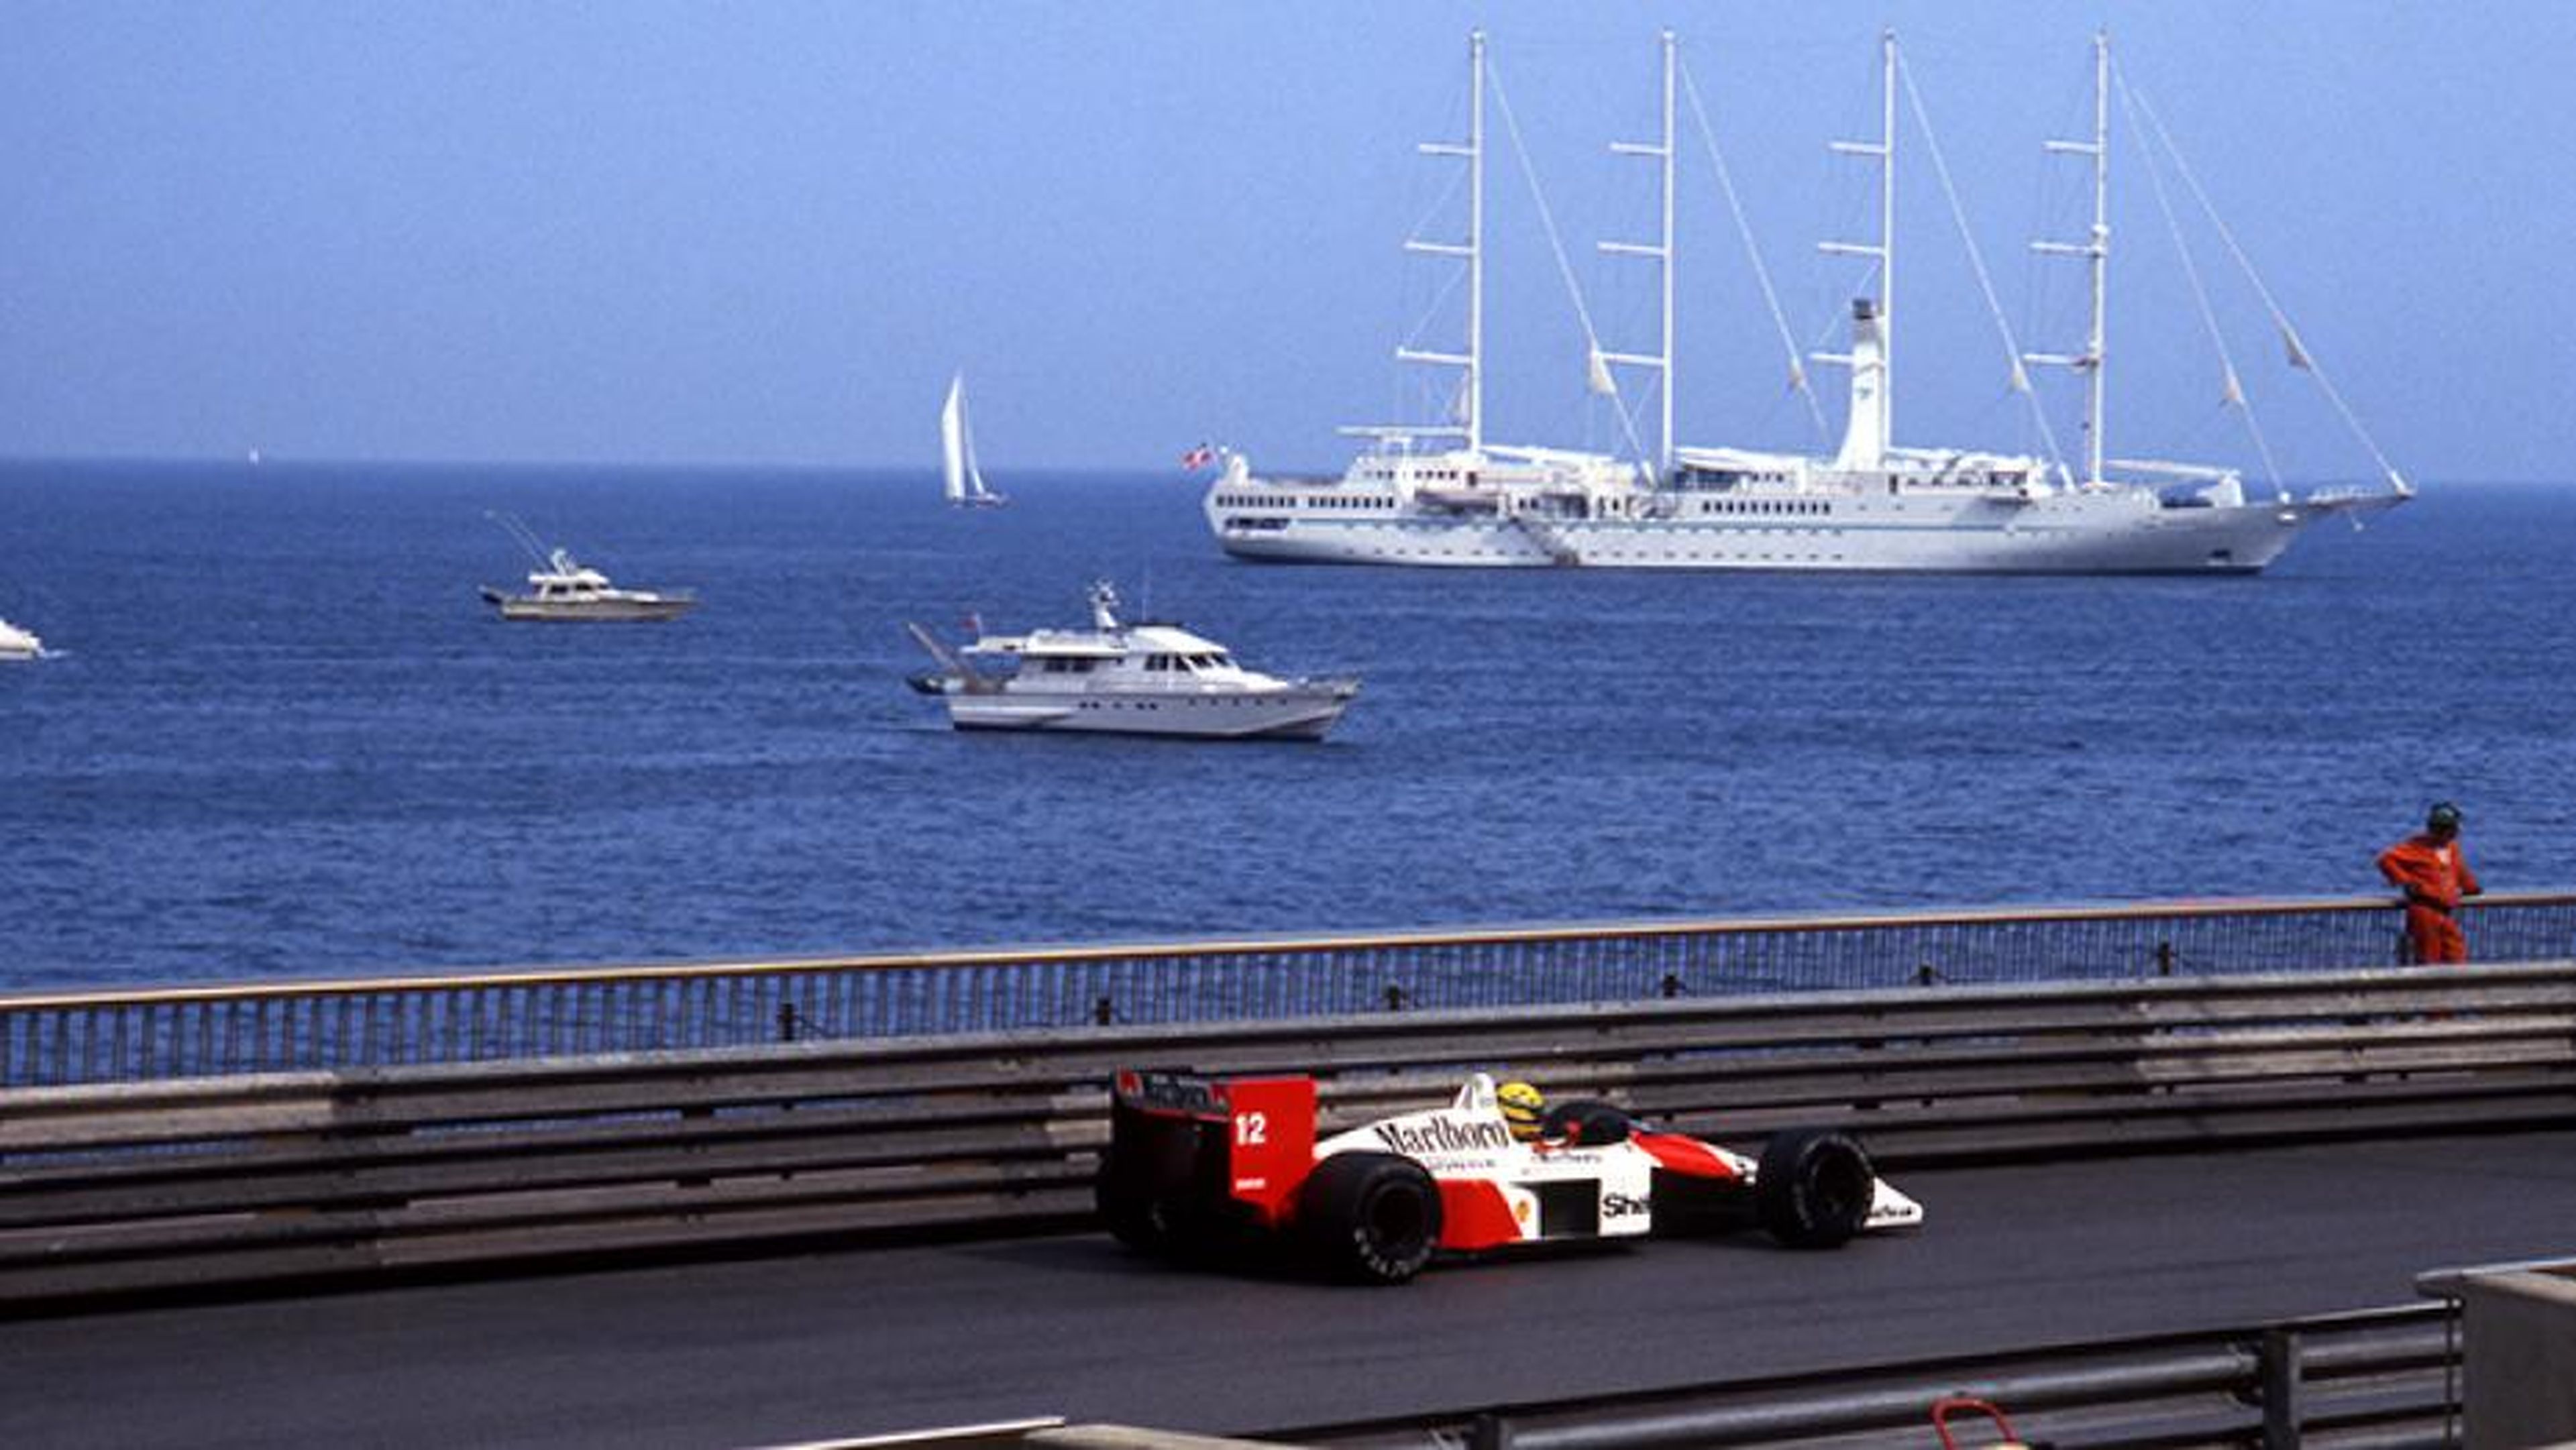 Mejores momentos de Ayrton Senna